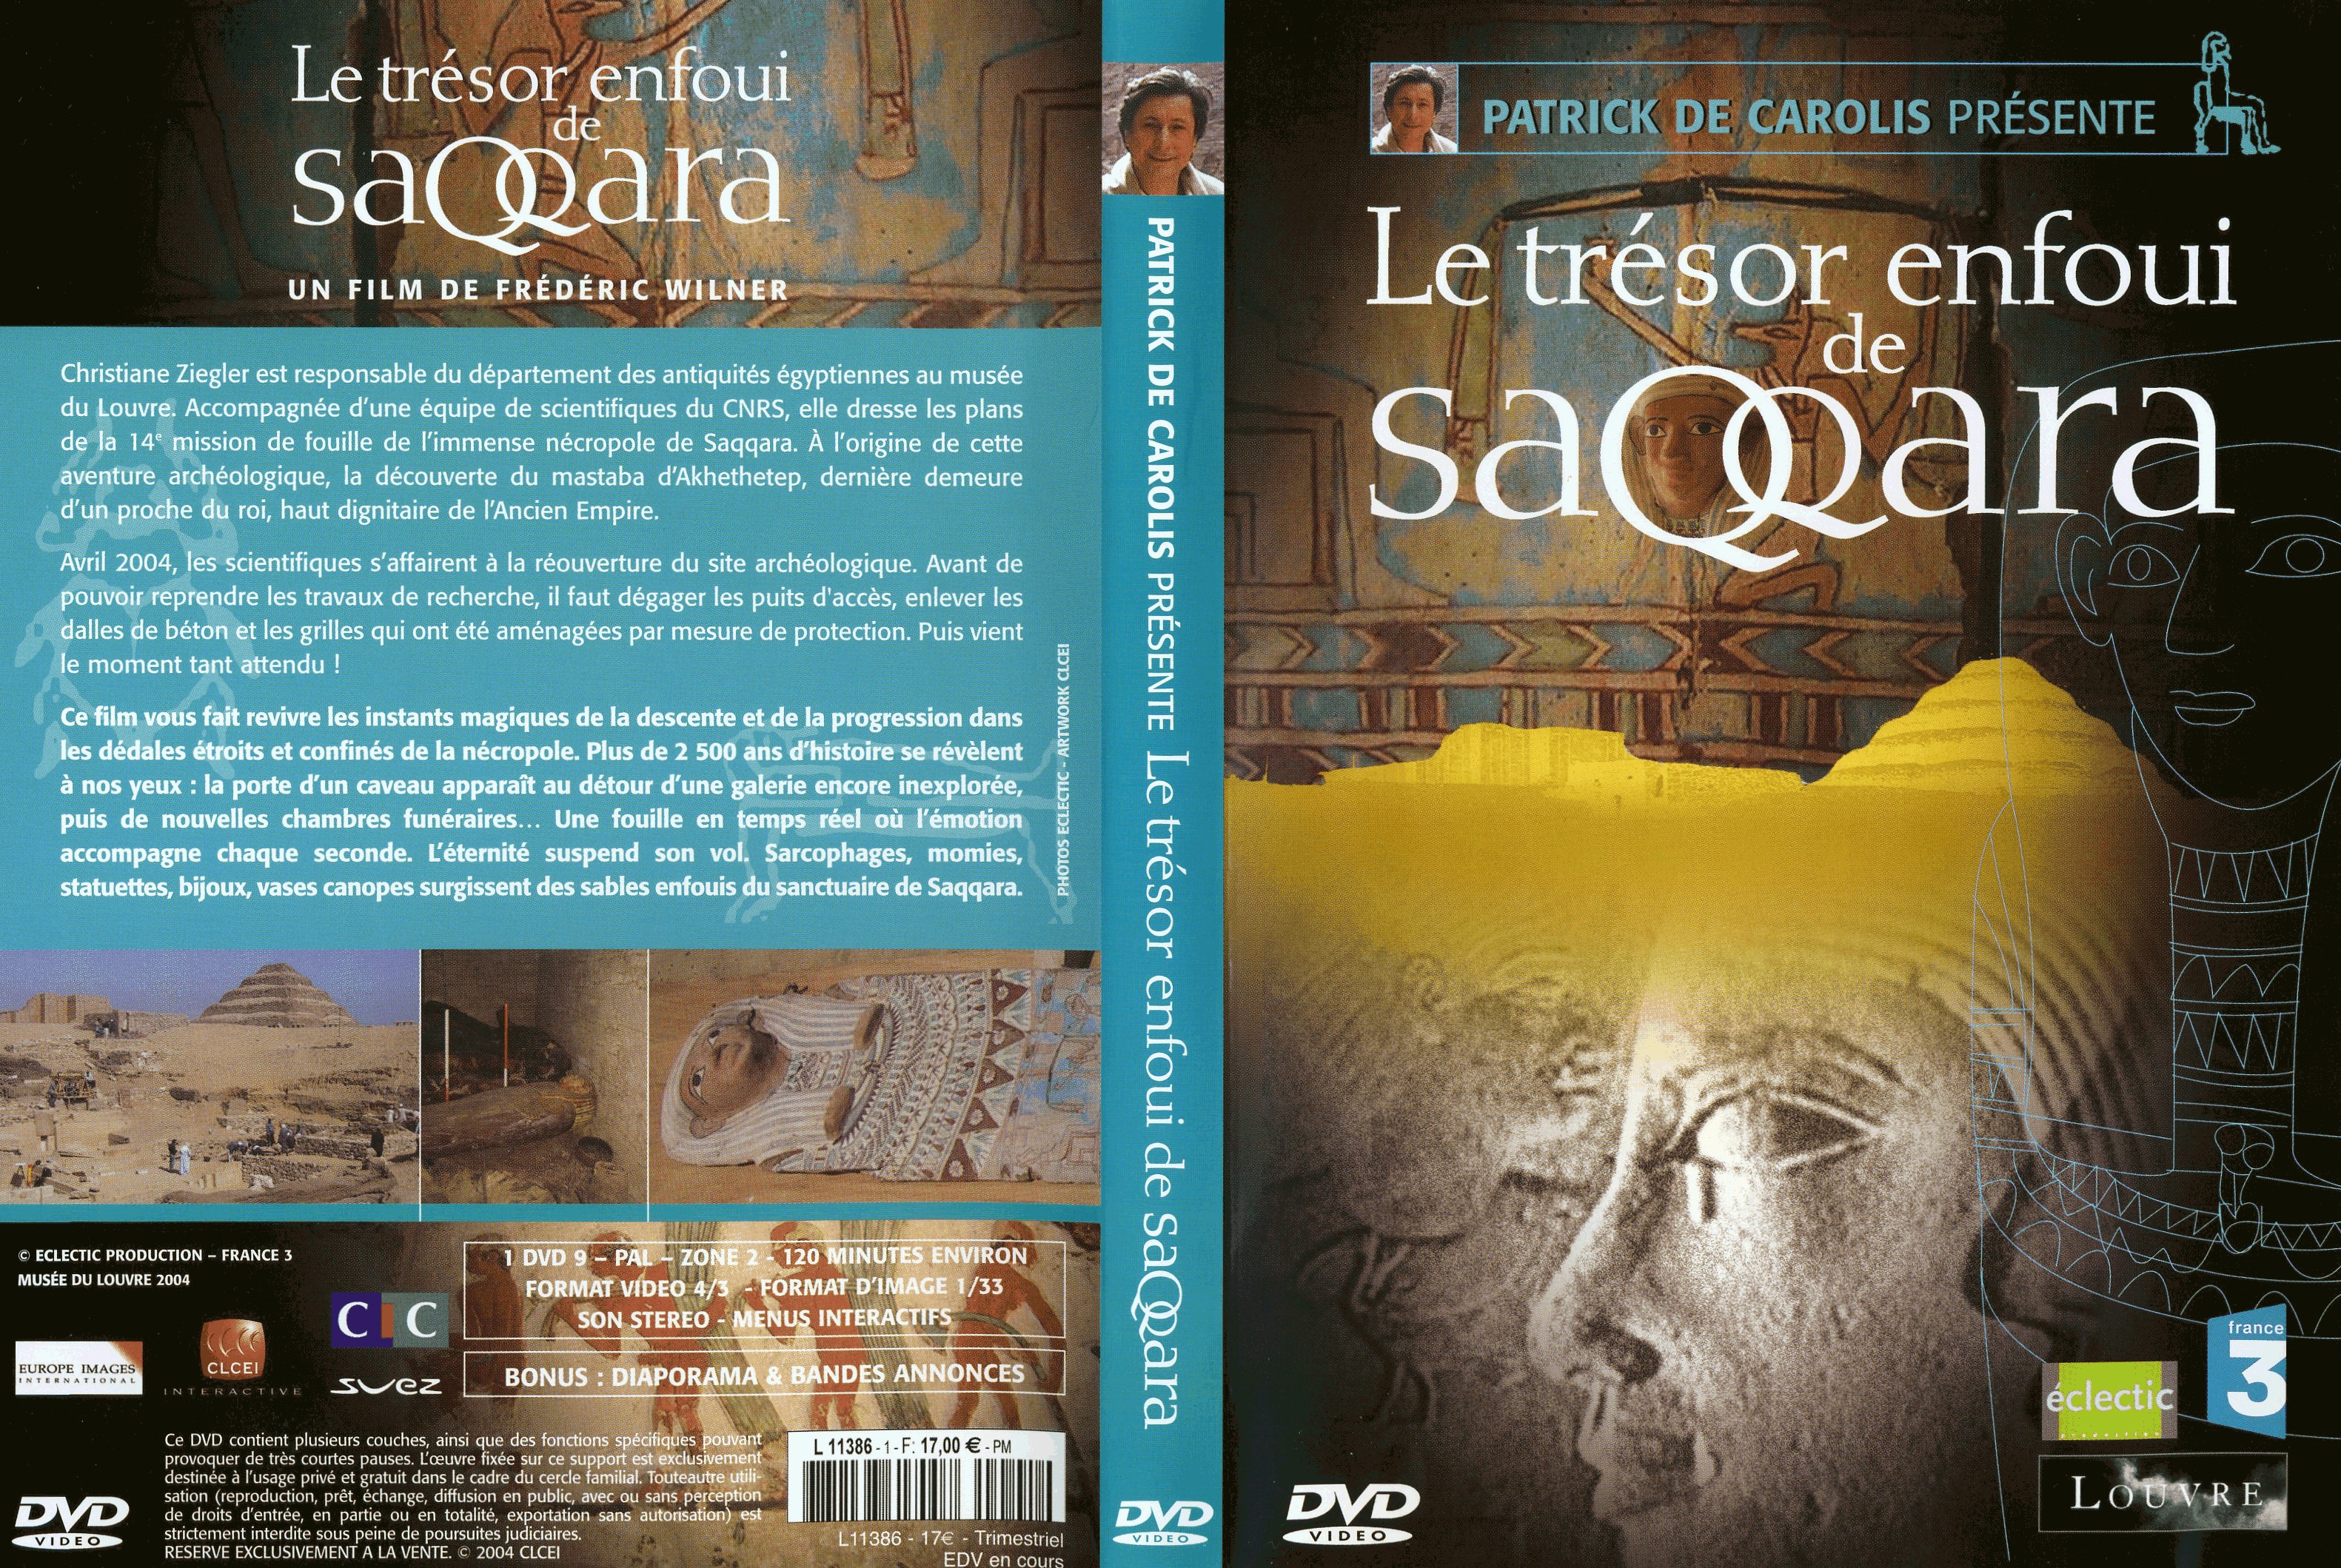 Jaquette DVD Le trsor enfoui de Saqqara